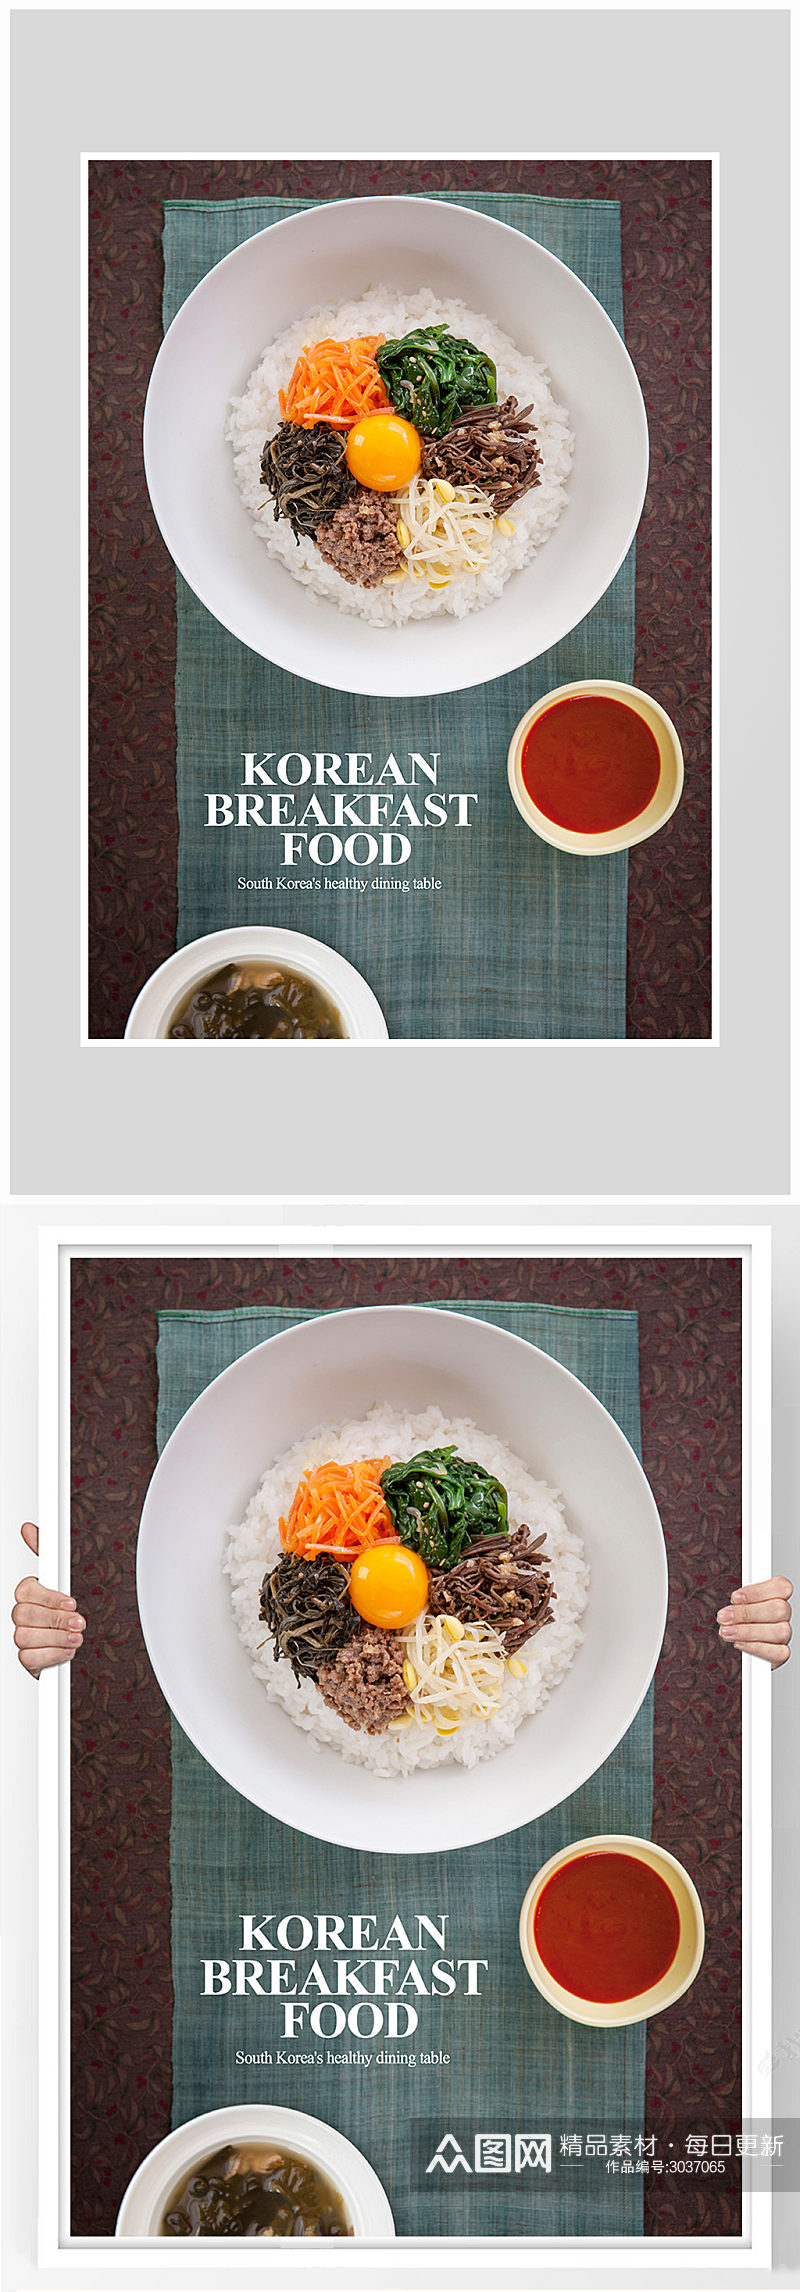 创意唯美日韩料理海报设计素材